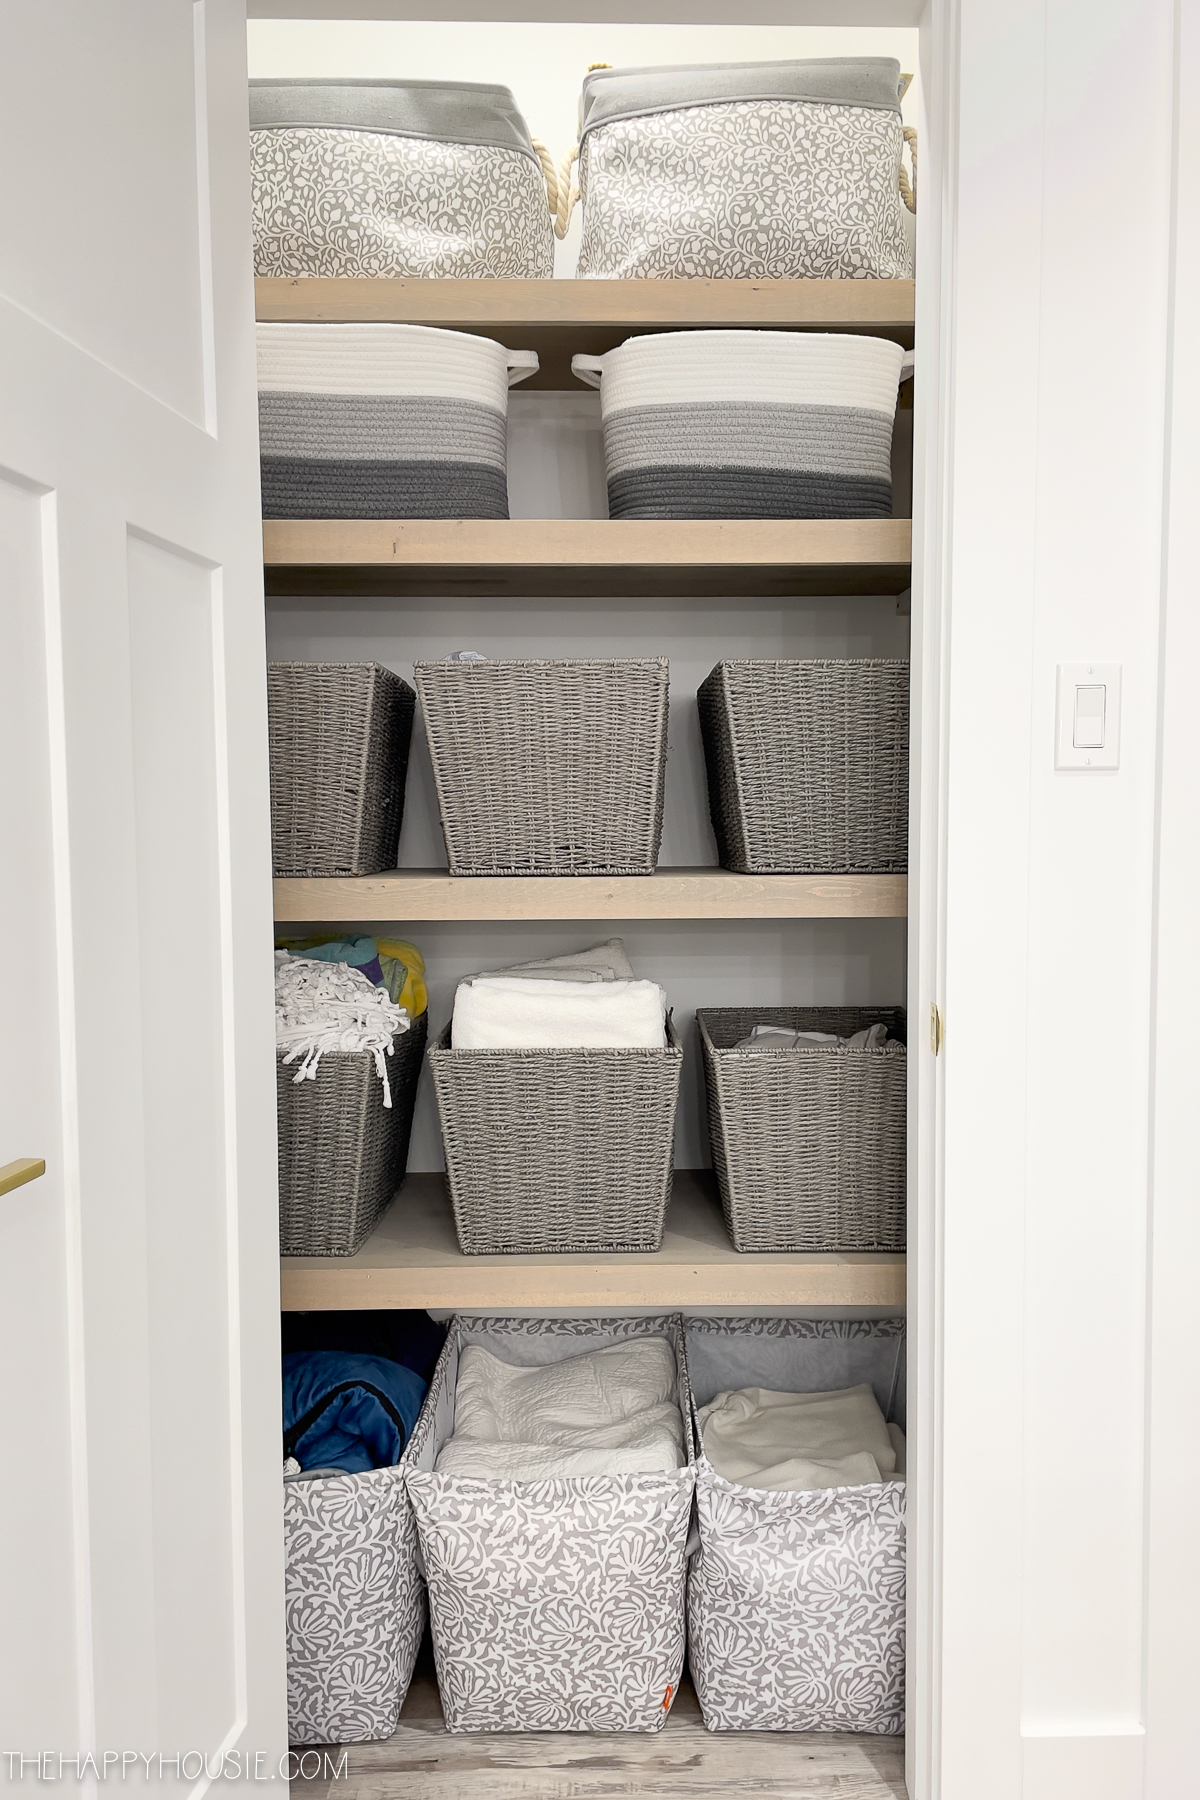 Linen Closet Organization | The Happy Housie